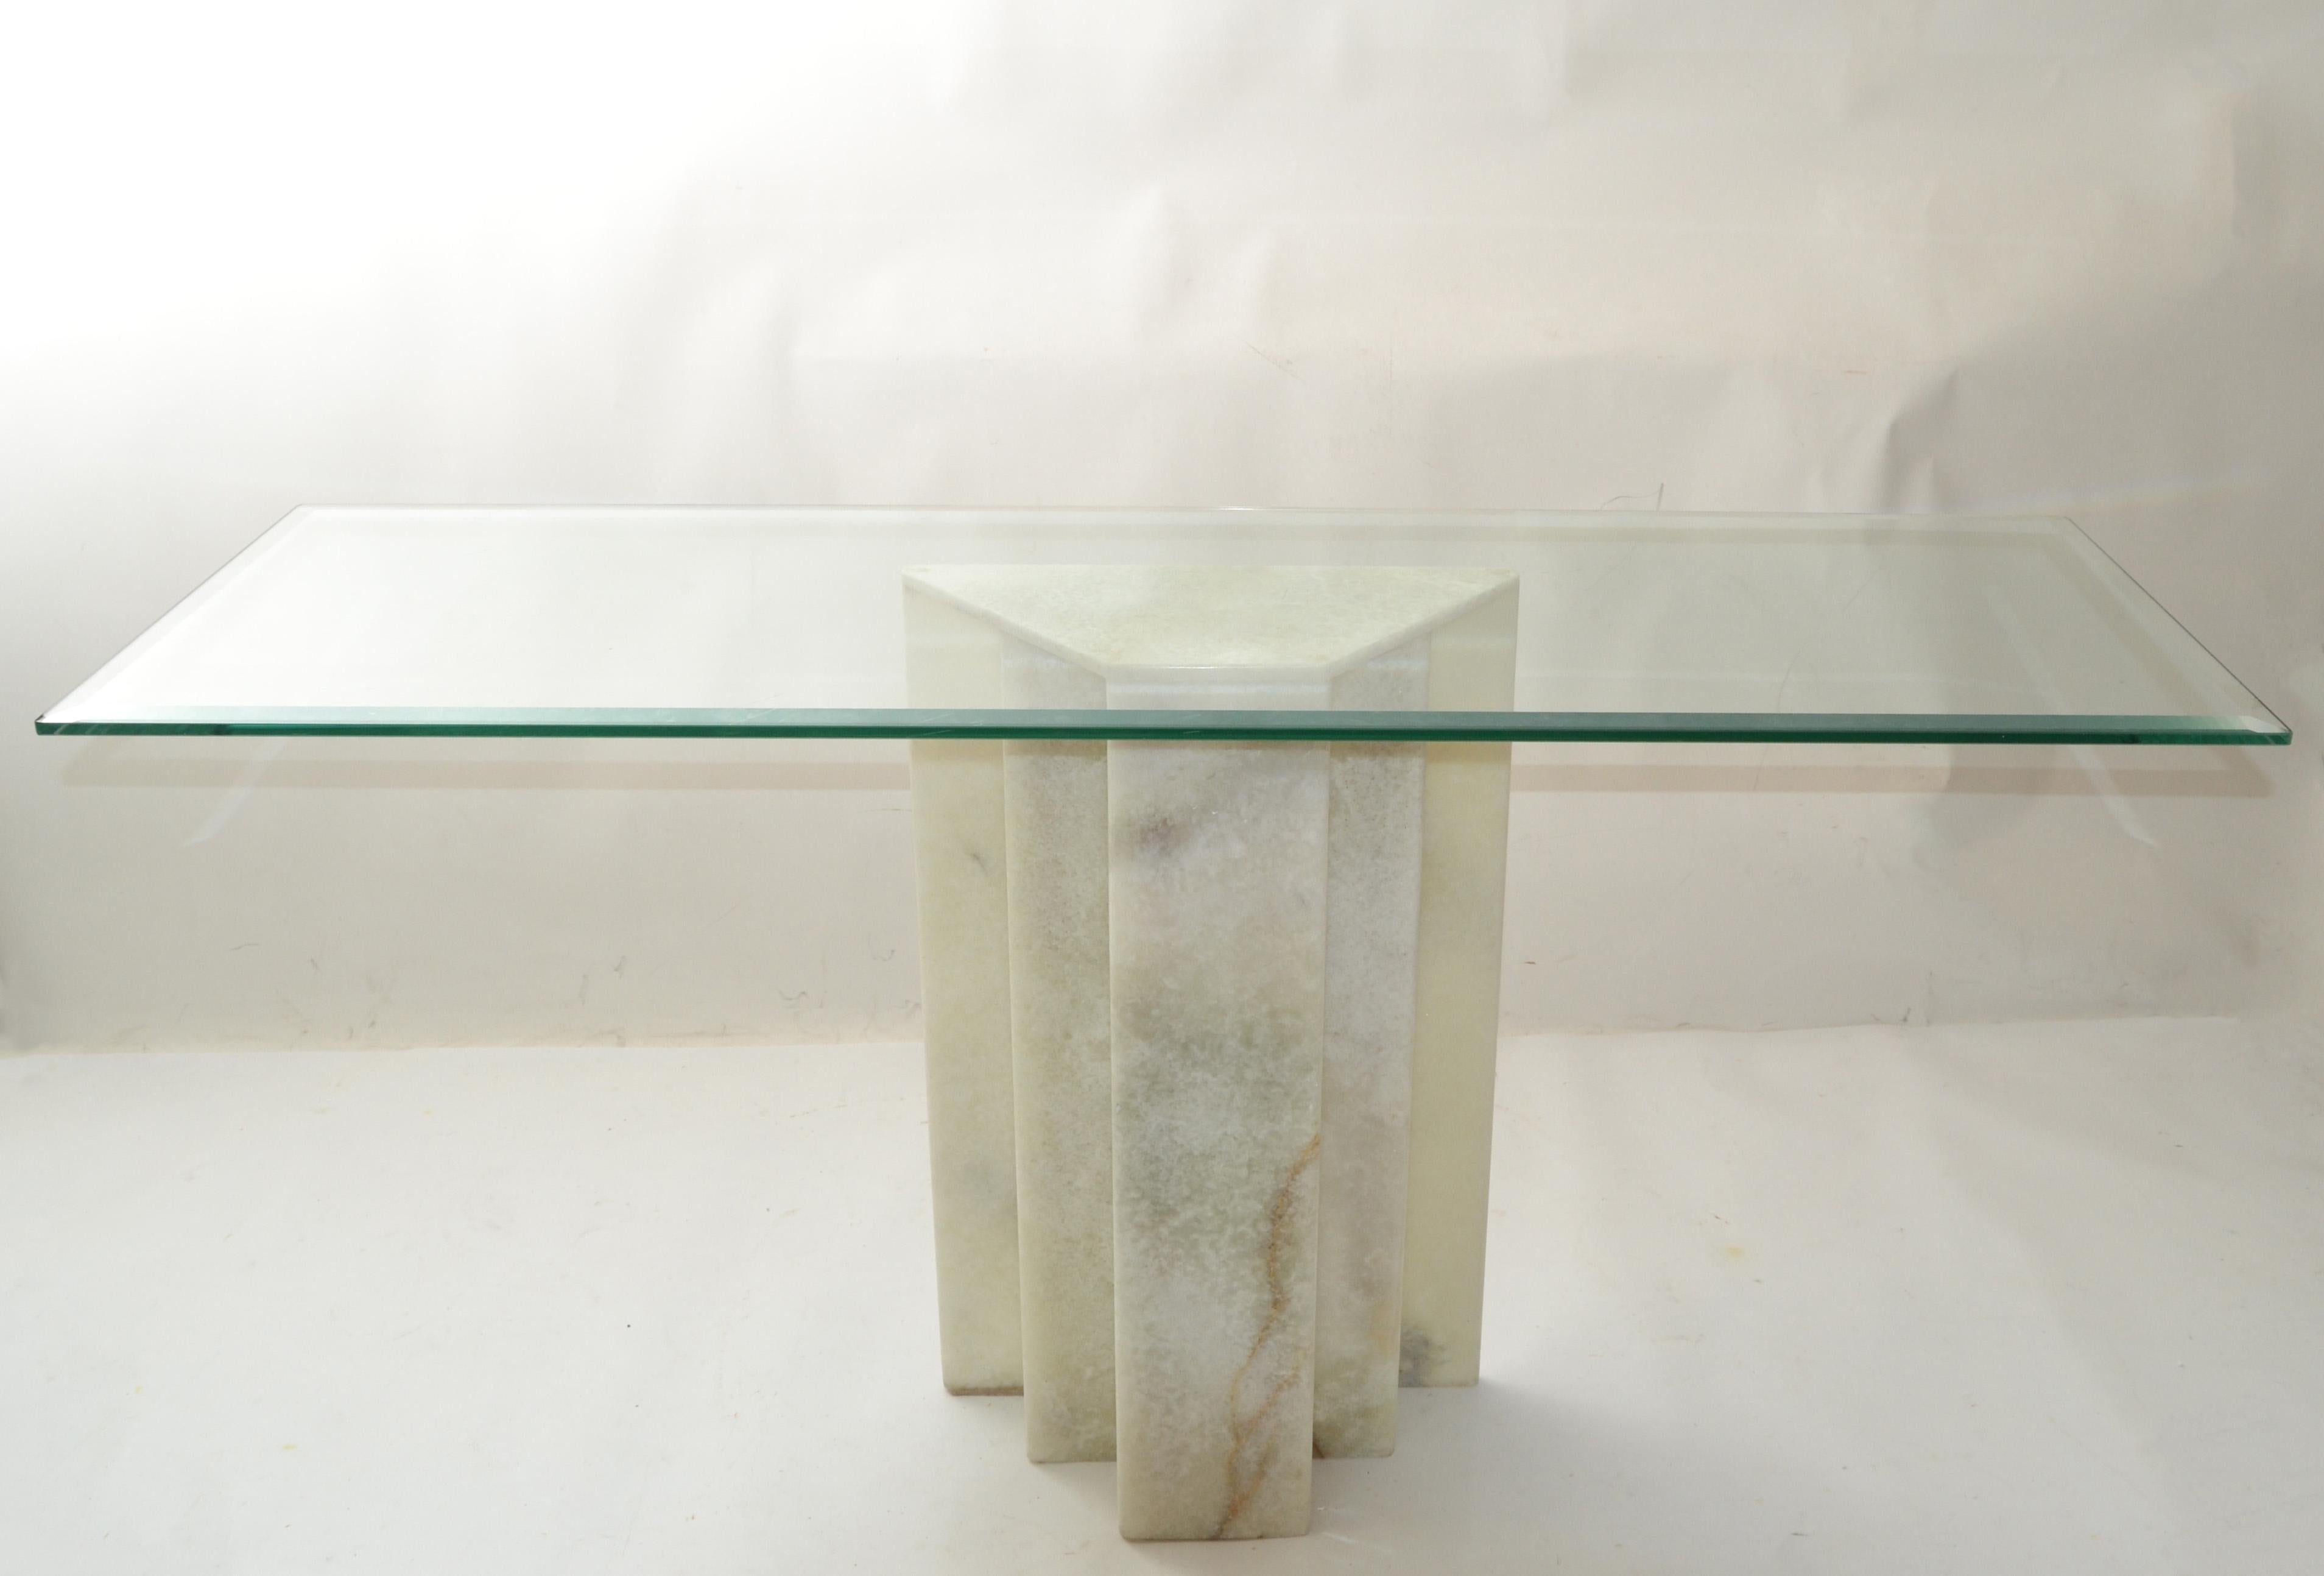 Solennelle table console en forme de gratte-ciel en albâtre blanc, piédestal, colonne de la période Art Déco.
Note : Pas de plateau en verre, nous offrons seulement la base.
Verre utilisé pour les photos : 56 x 18 pouces. 
La hauteur du plateau